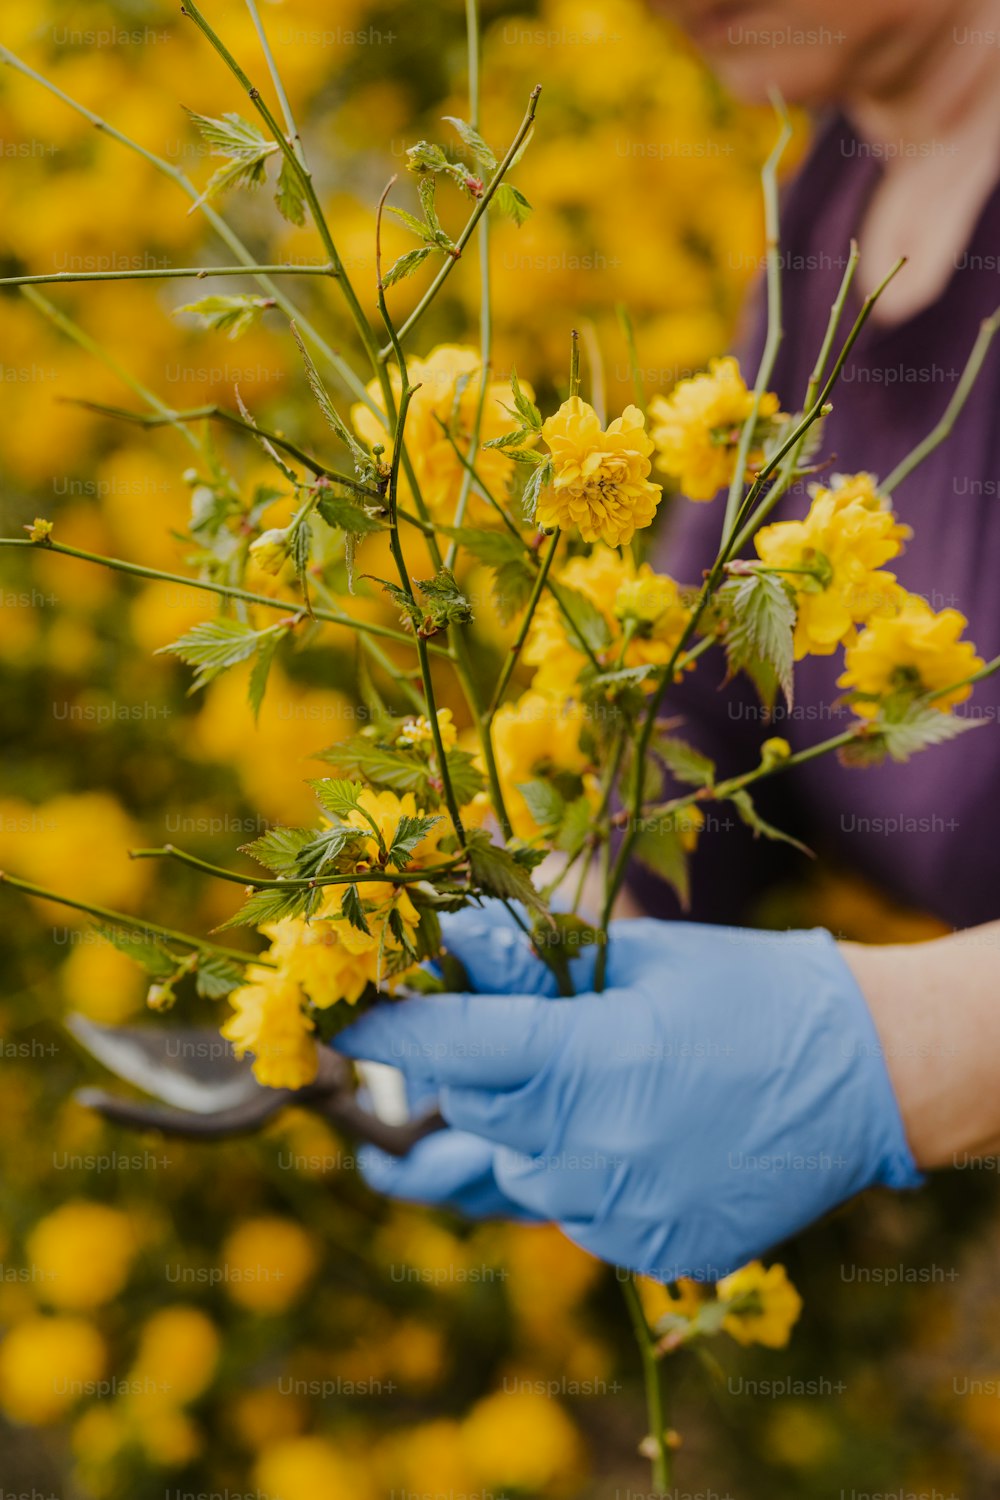 Eine Frau in blauen Handschuhen, die einen Strauß gelber Blumen hält